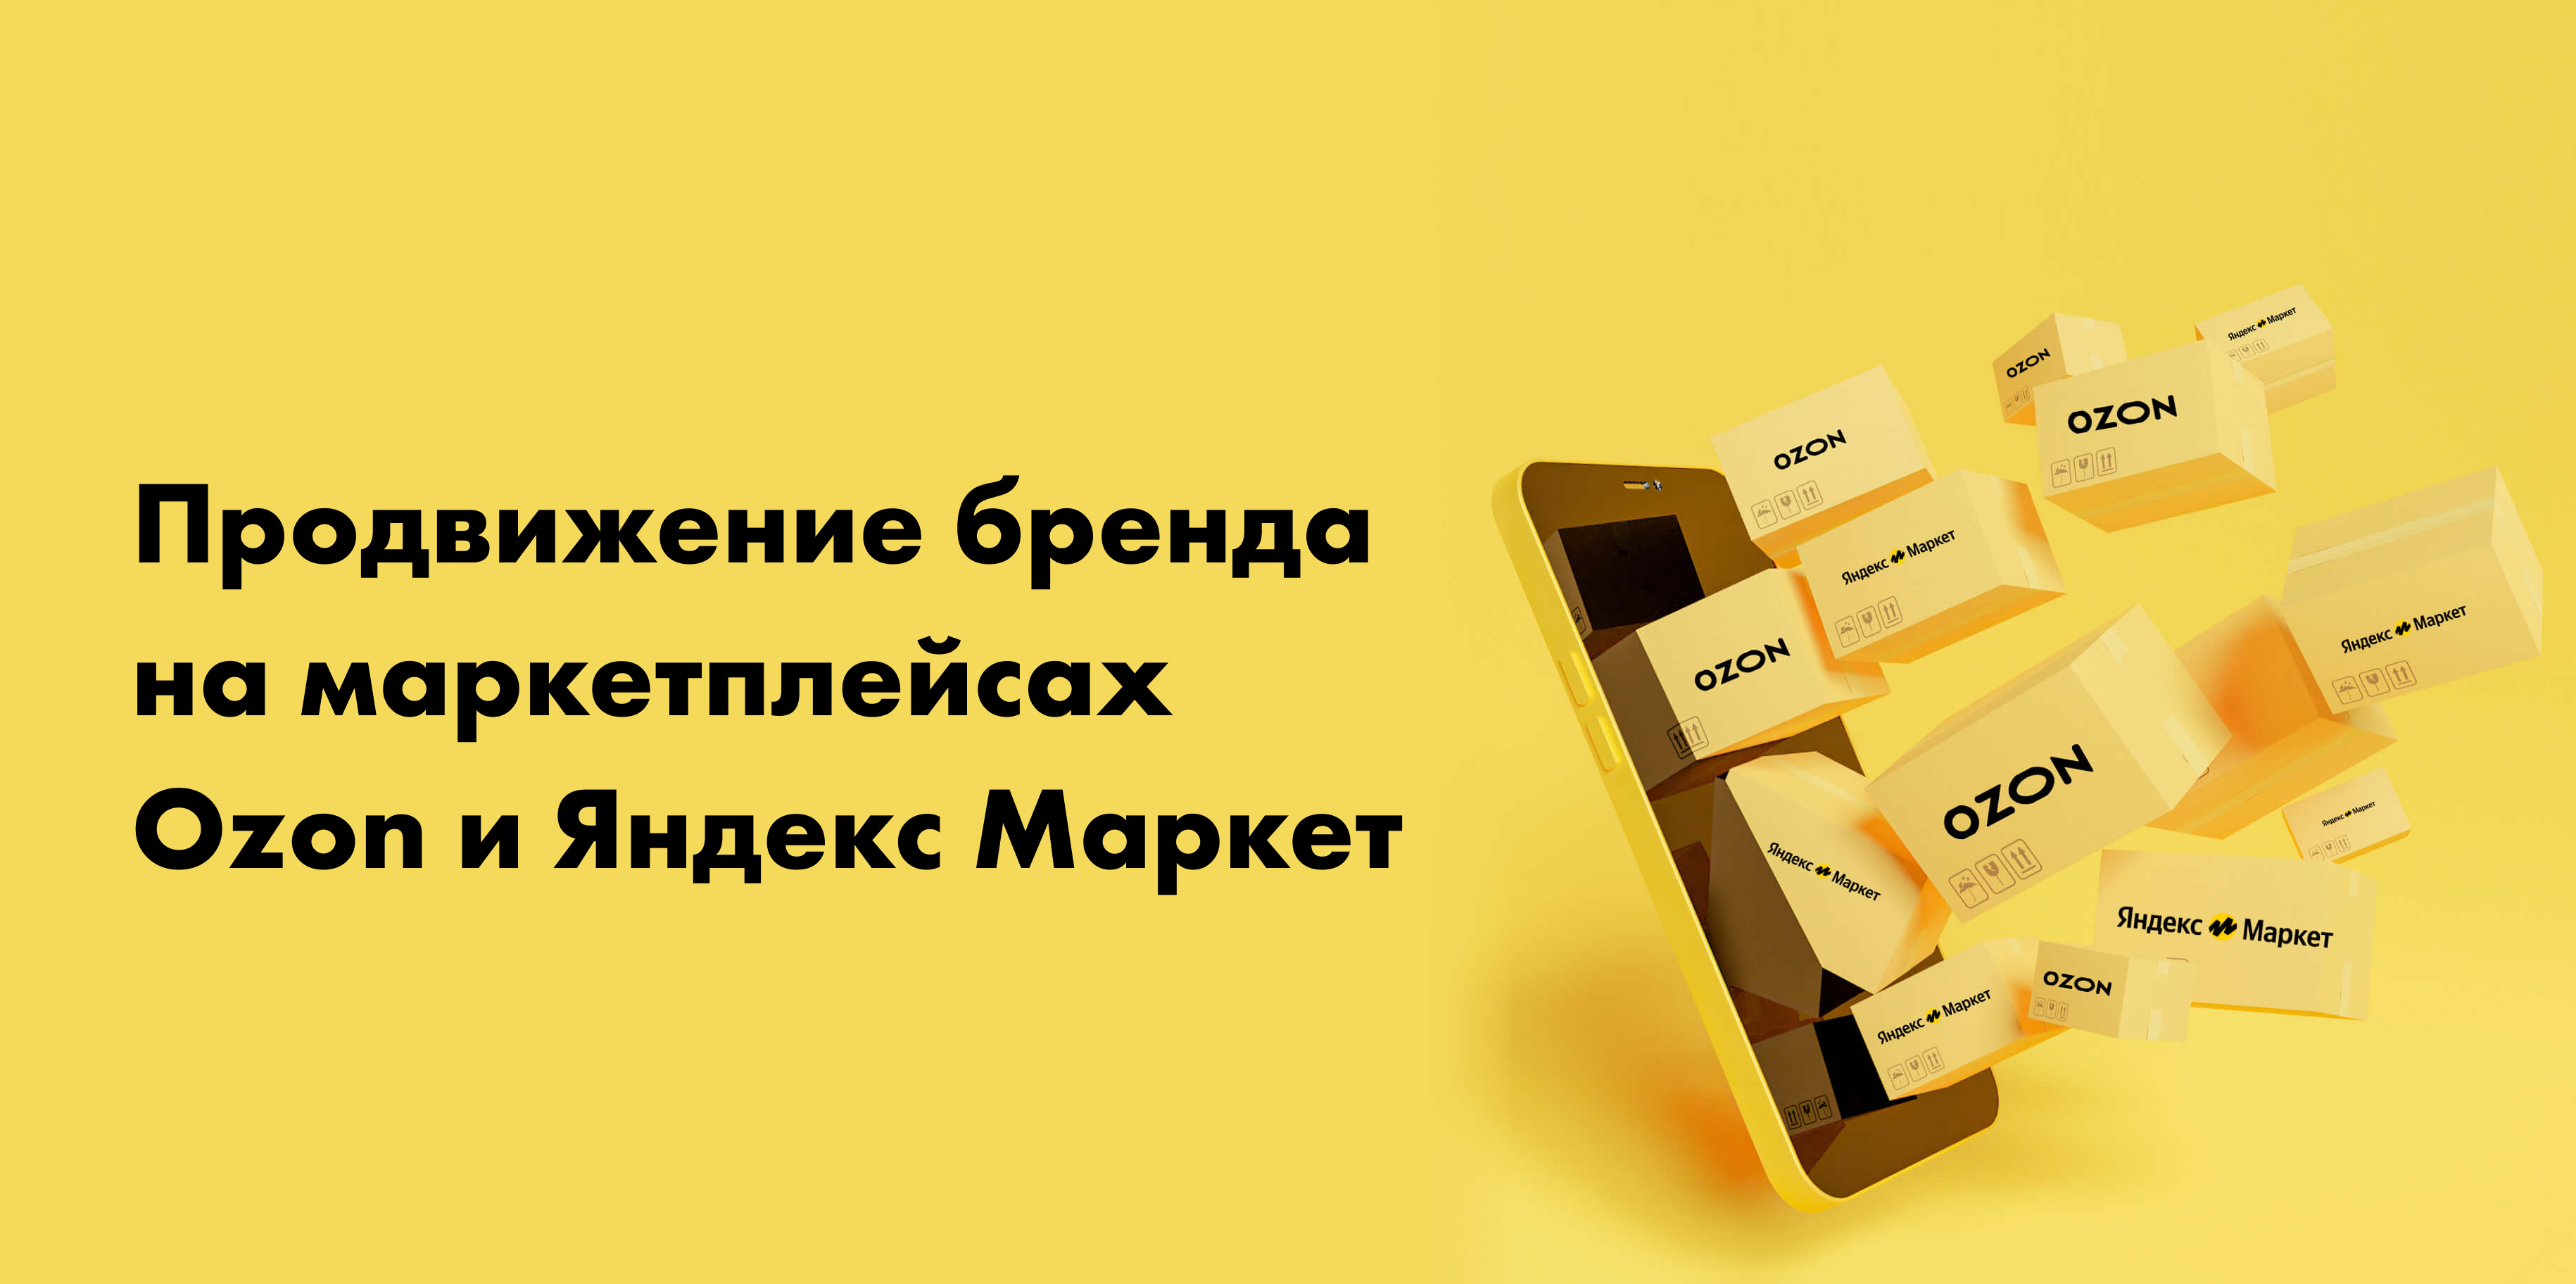 Продвижение бренда на маркетплейсах Ozon и Яндекс Маркет | Retail.ru